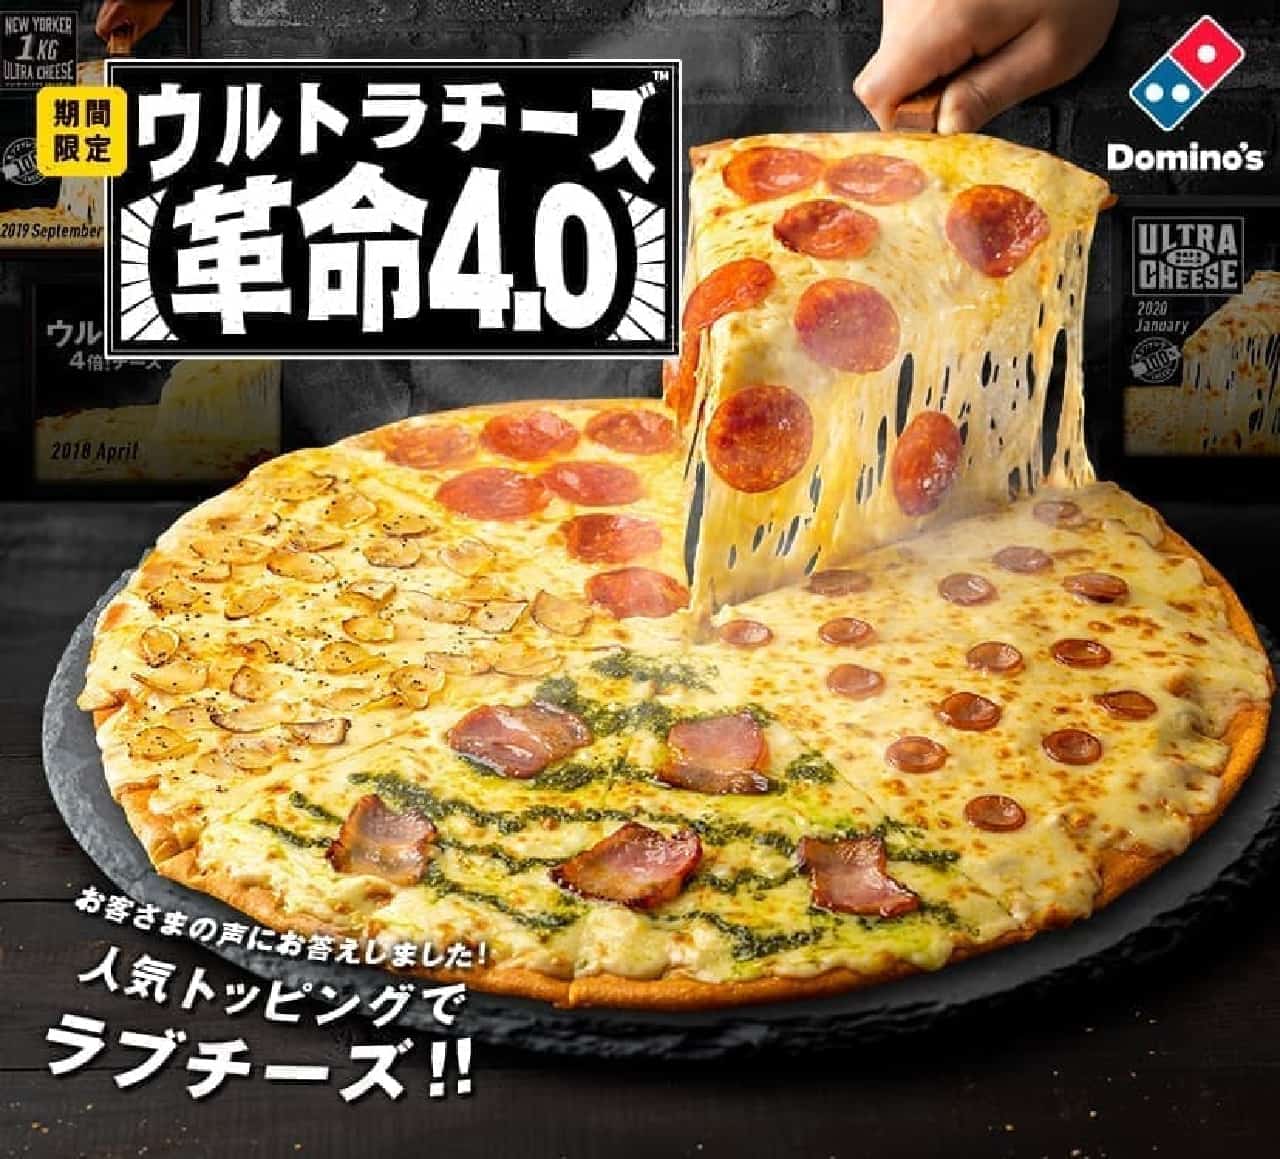 ドミノ・ピザ「ウルトラチーズ革命・クワトロ4.0」